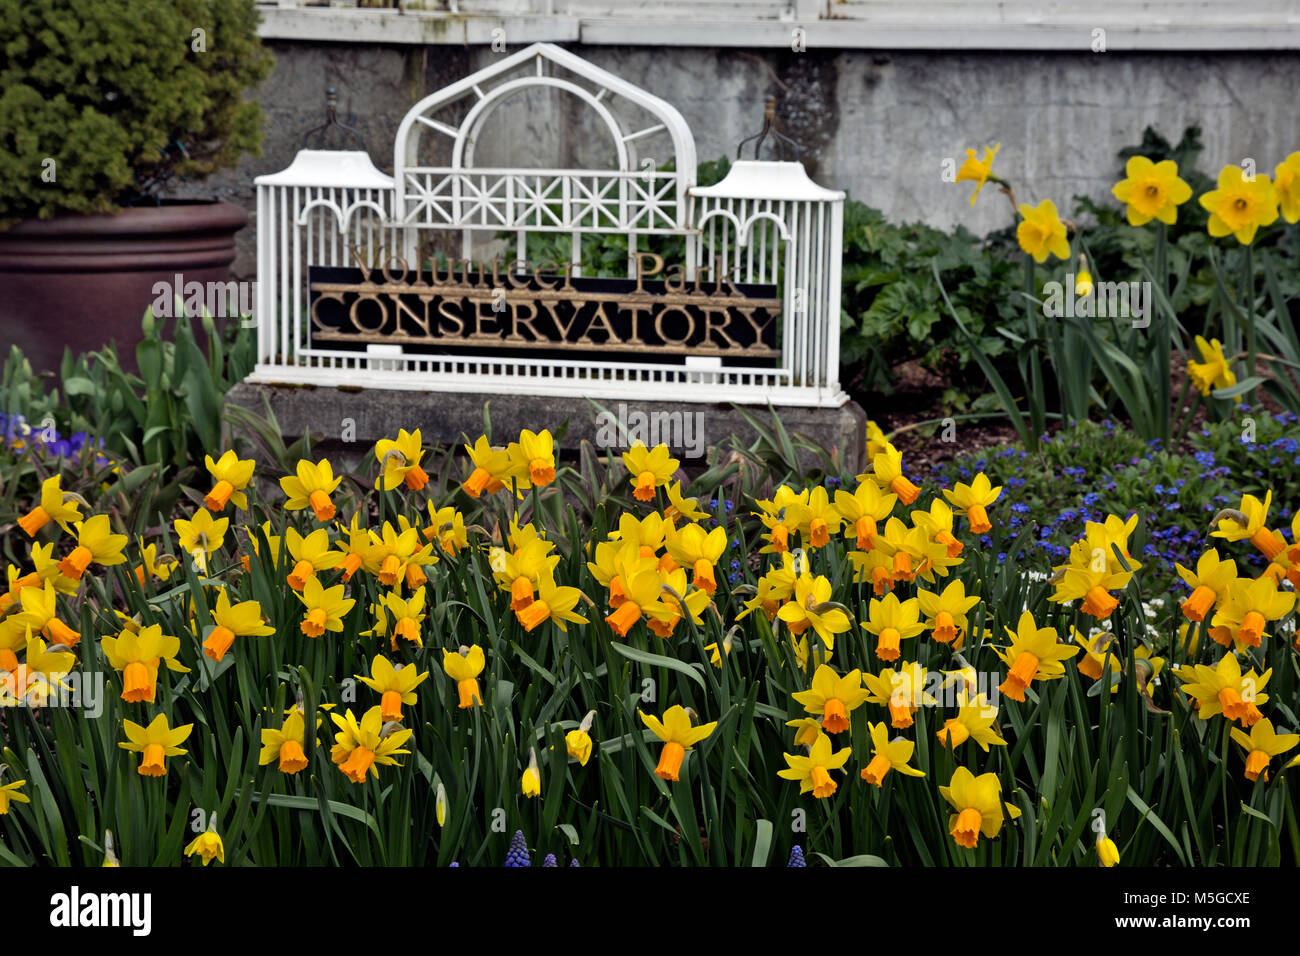 WA 13671-00 ... WASHINGTON - Narzissen blühen unter den Frühling Blumen säumen die Basis des Konservatoriums in Seattle Freiwillige Park. Stockfoto